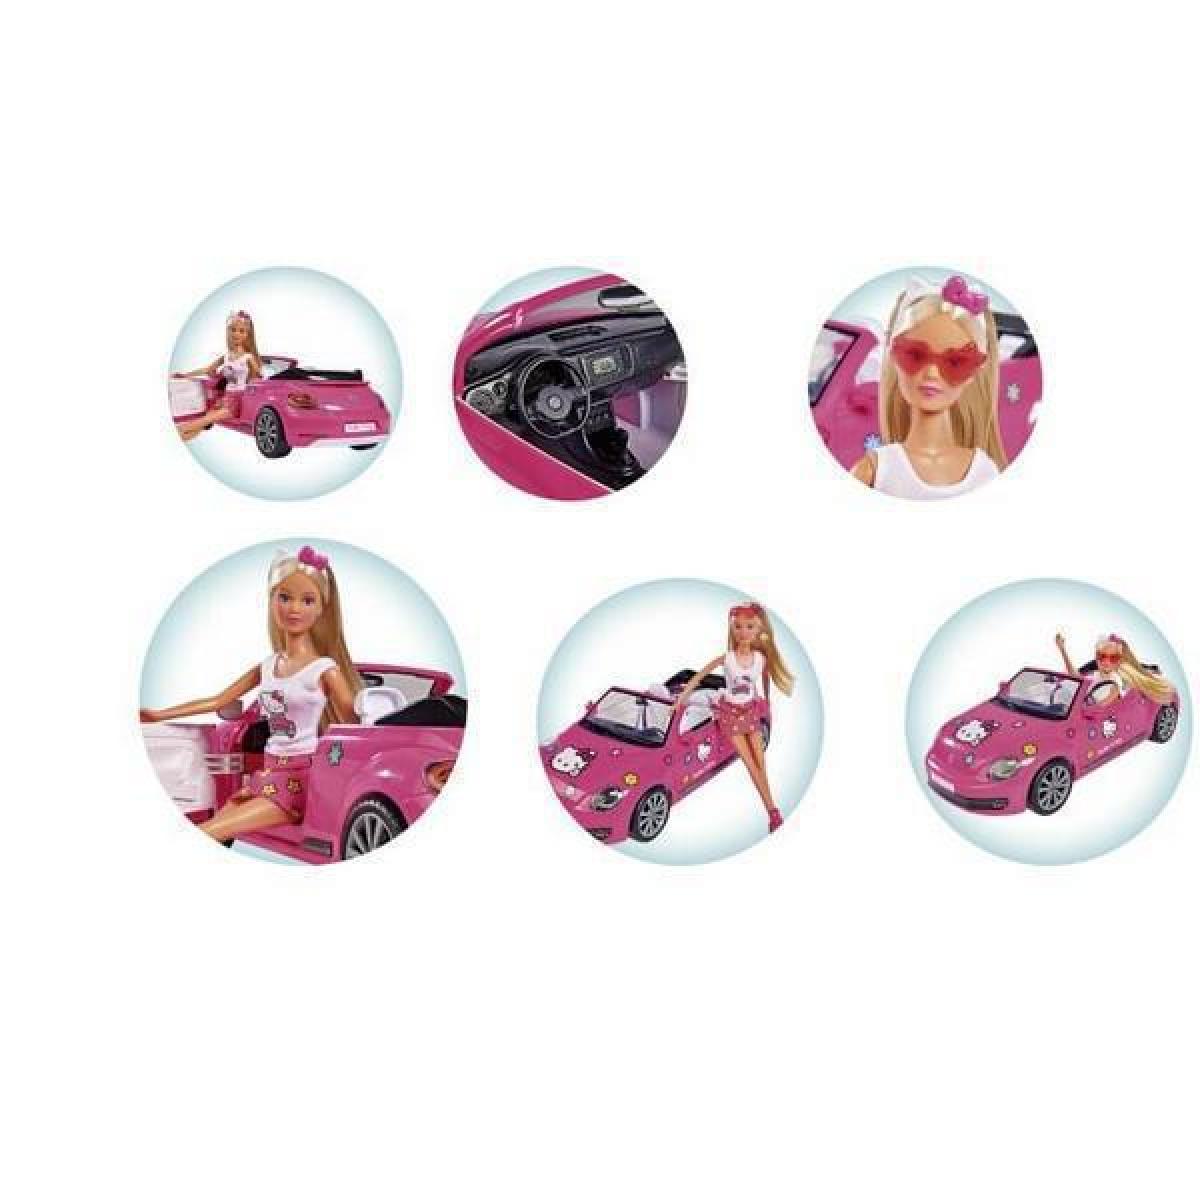 Κούκλα Steffi Hello Kitty Με Αυτοκίνητο VW Beetle Cabrio Simba Toys Από 3 Ετών